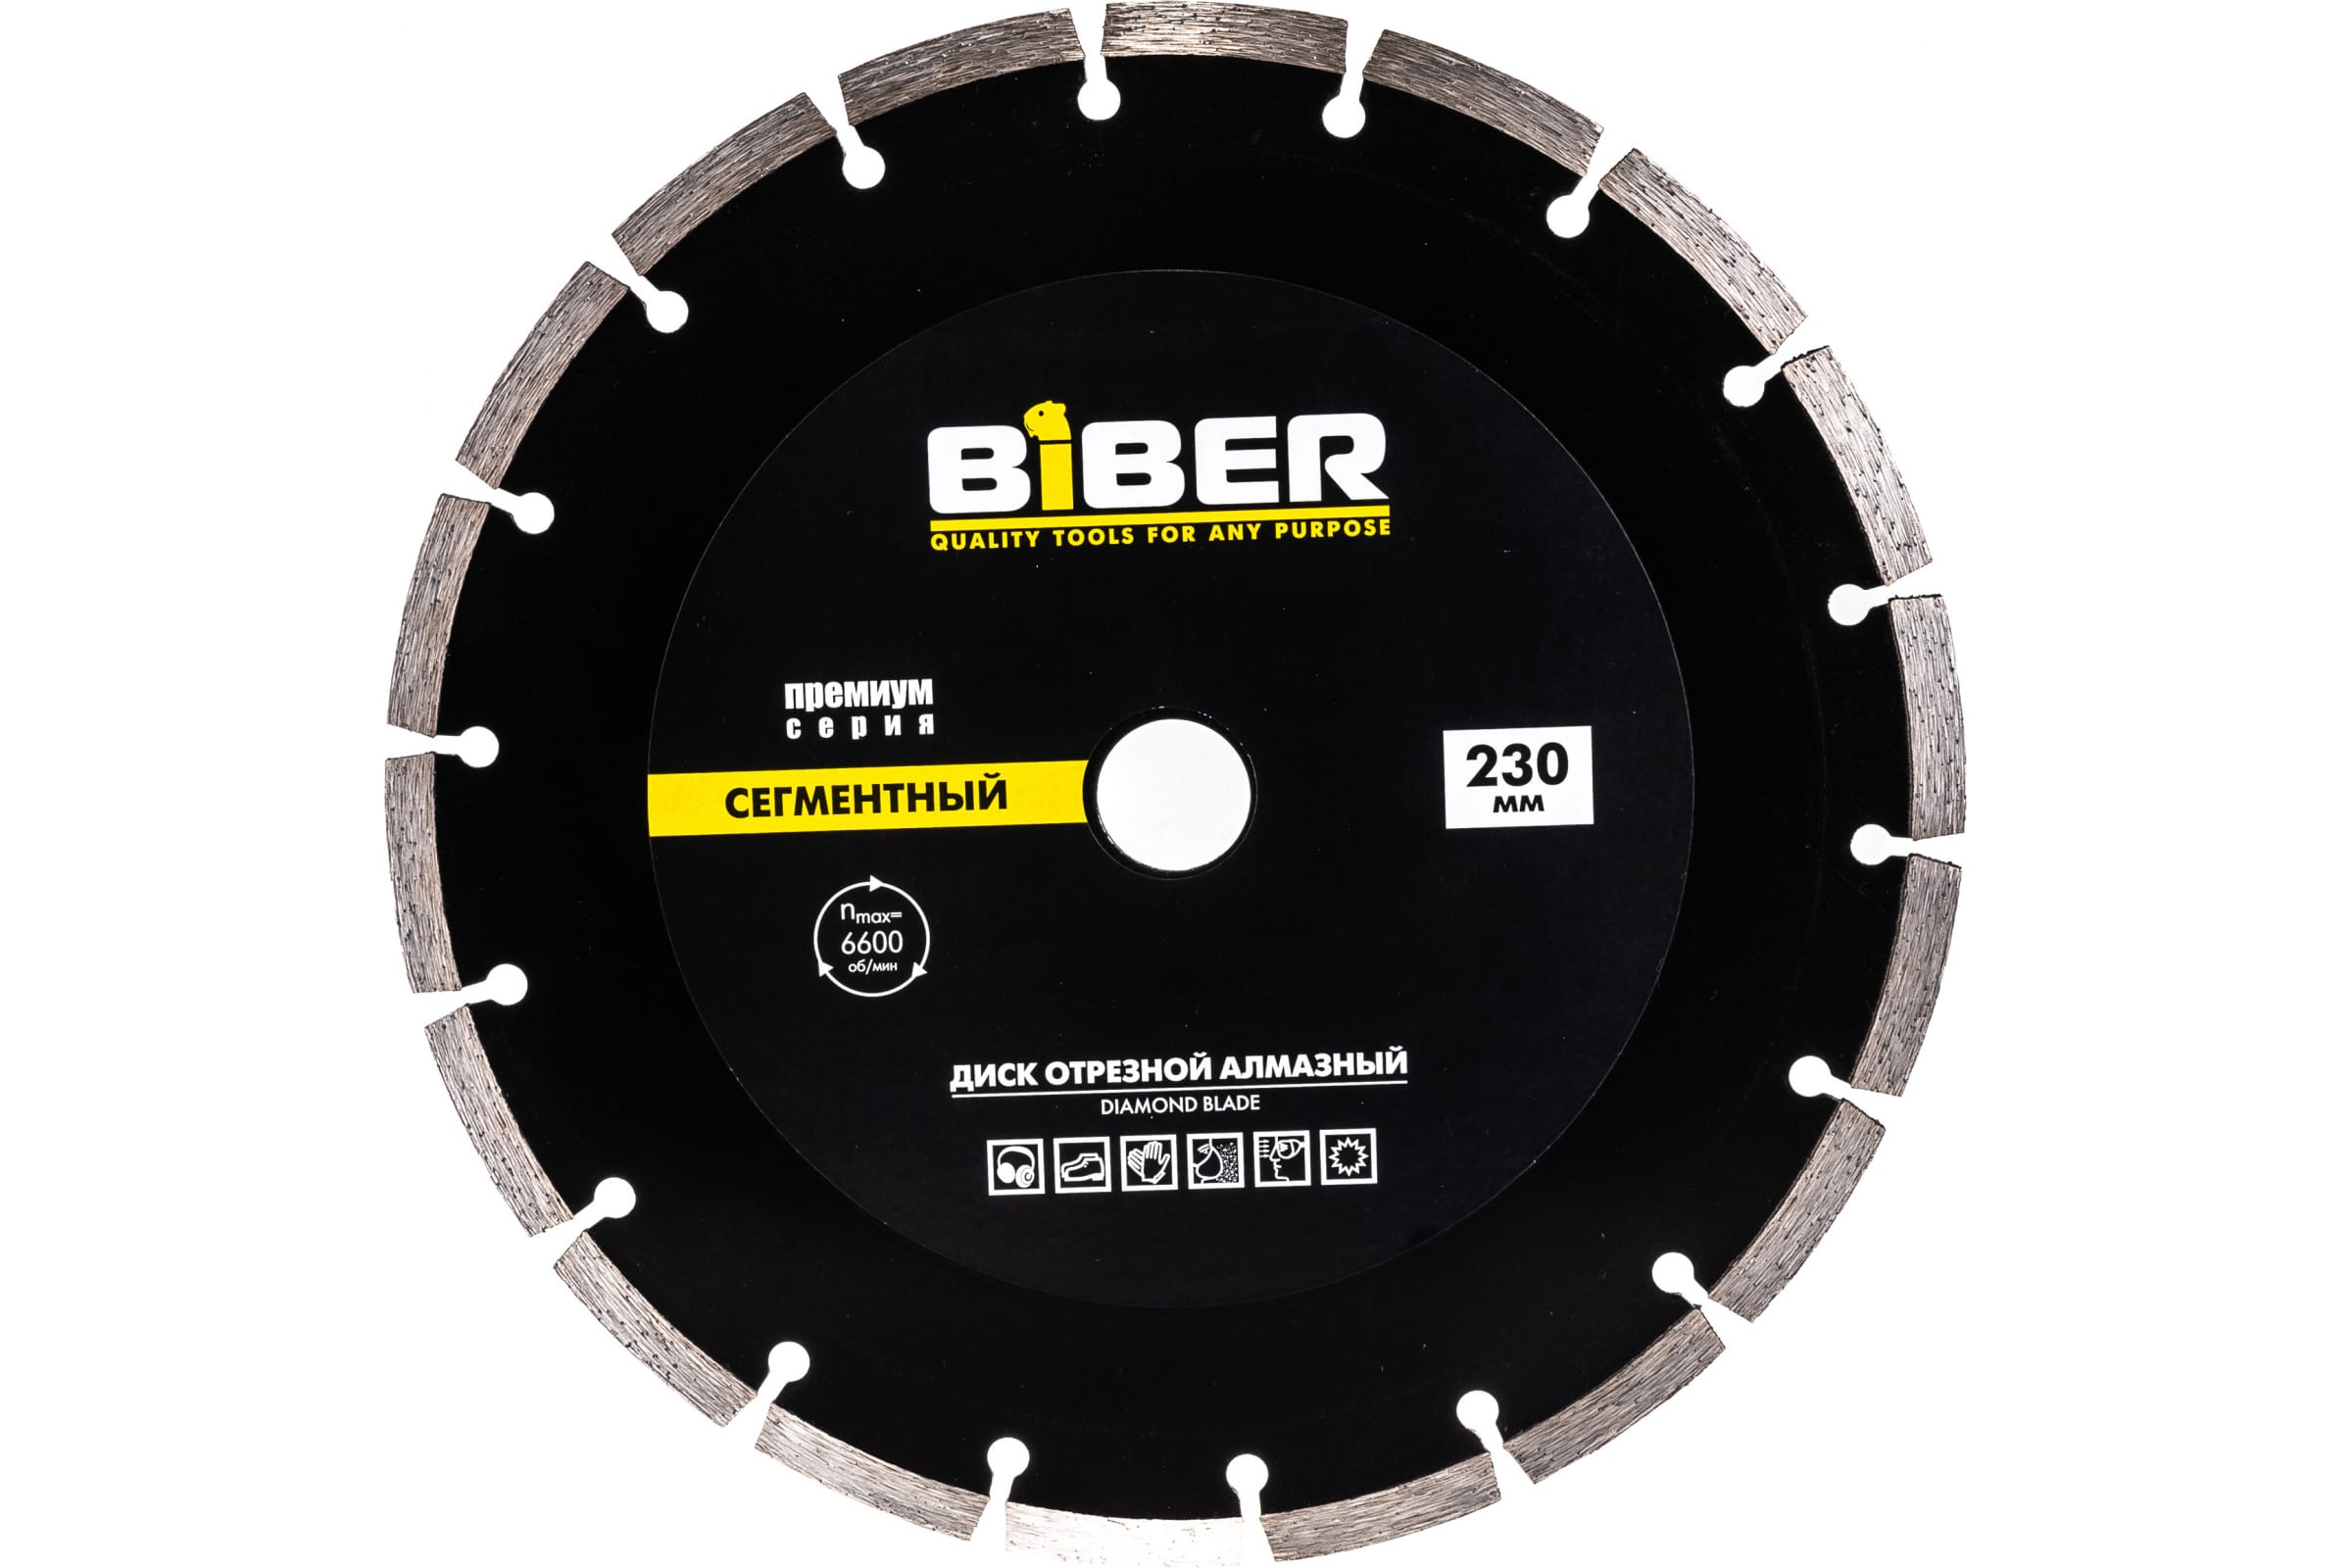 Biber Диск алмазный сегментный Премиум 230мм 70266 тов-039554 пильный диск biber